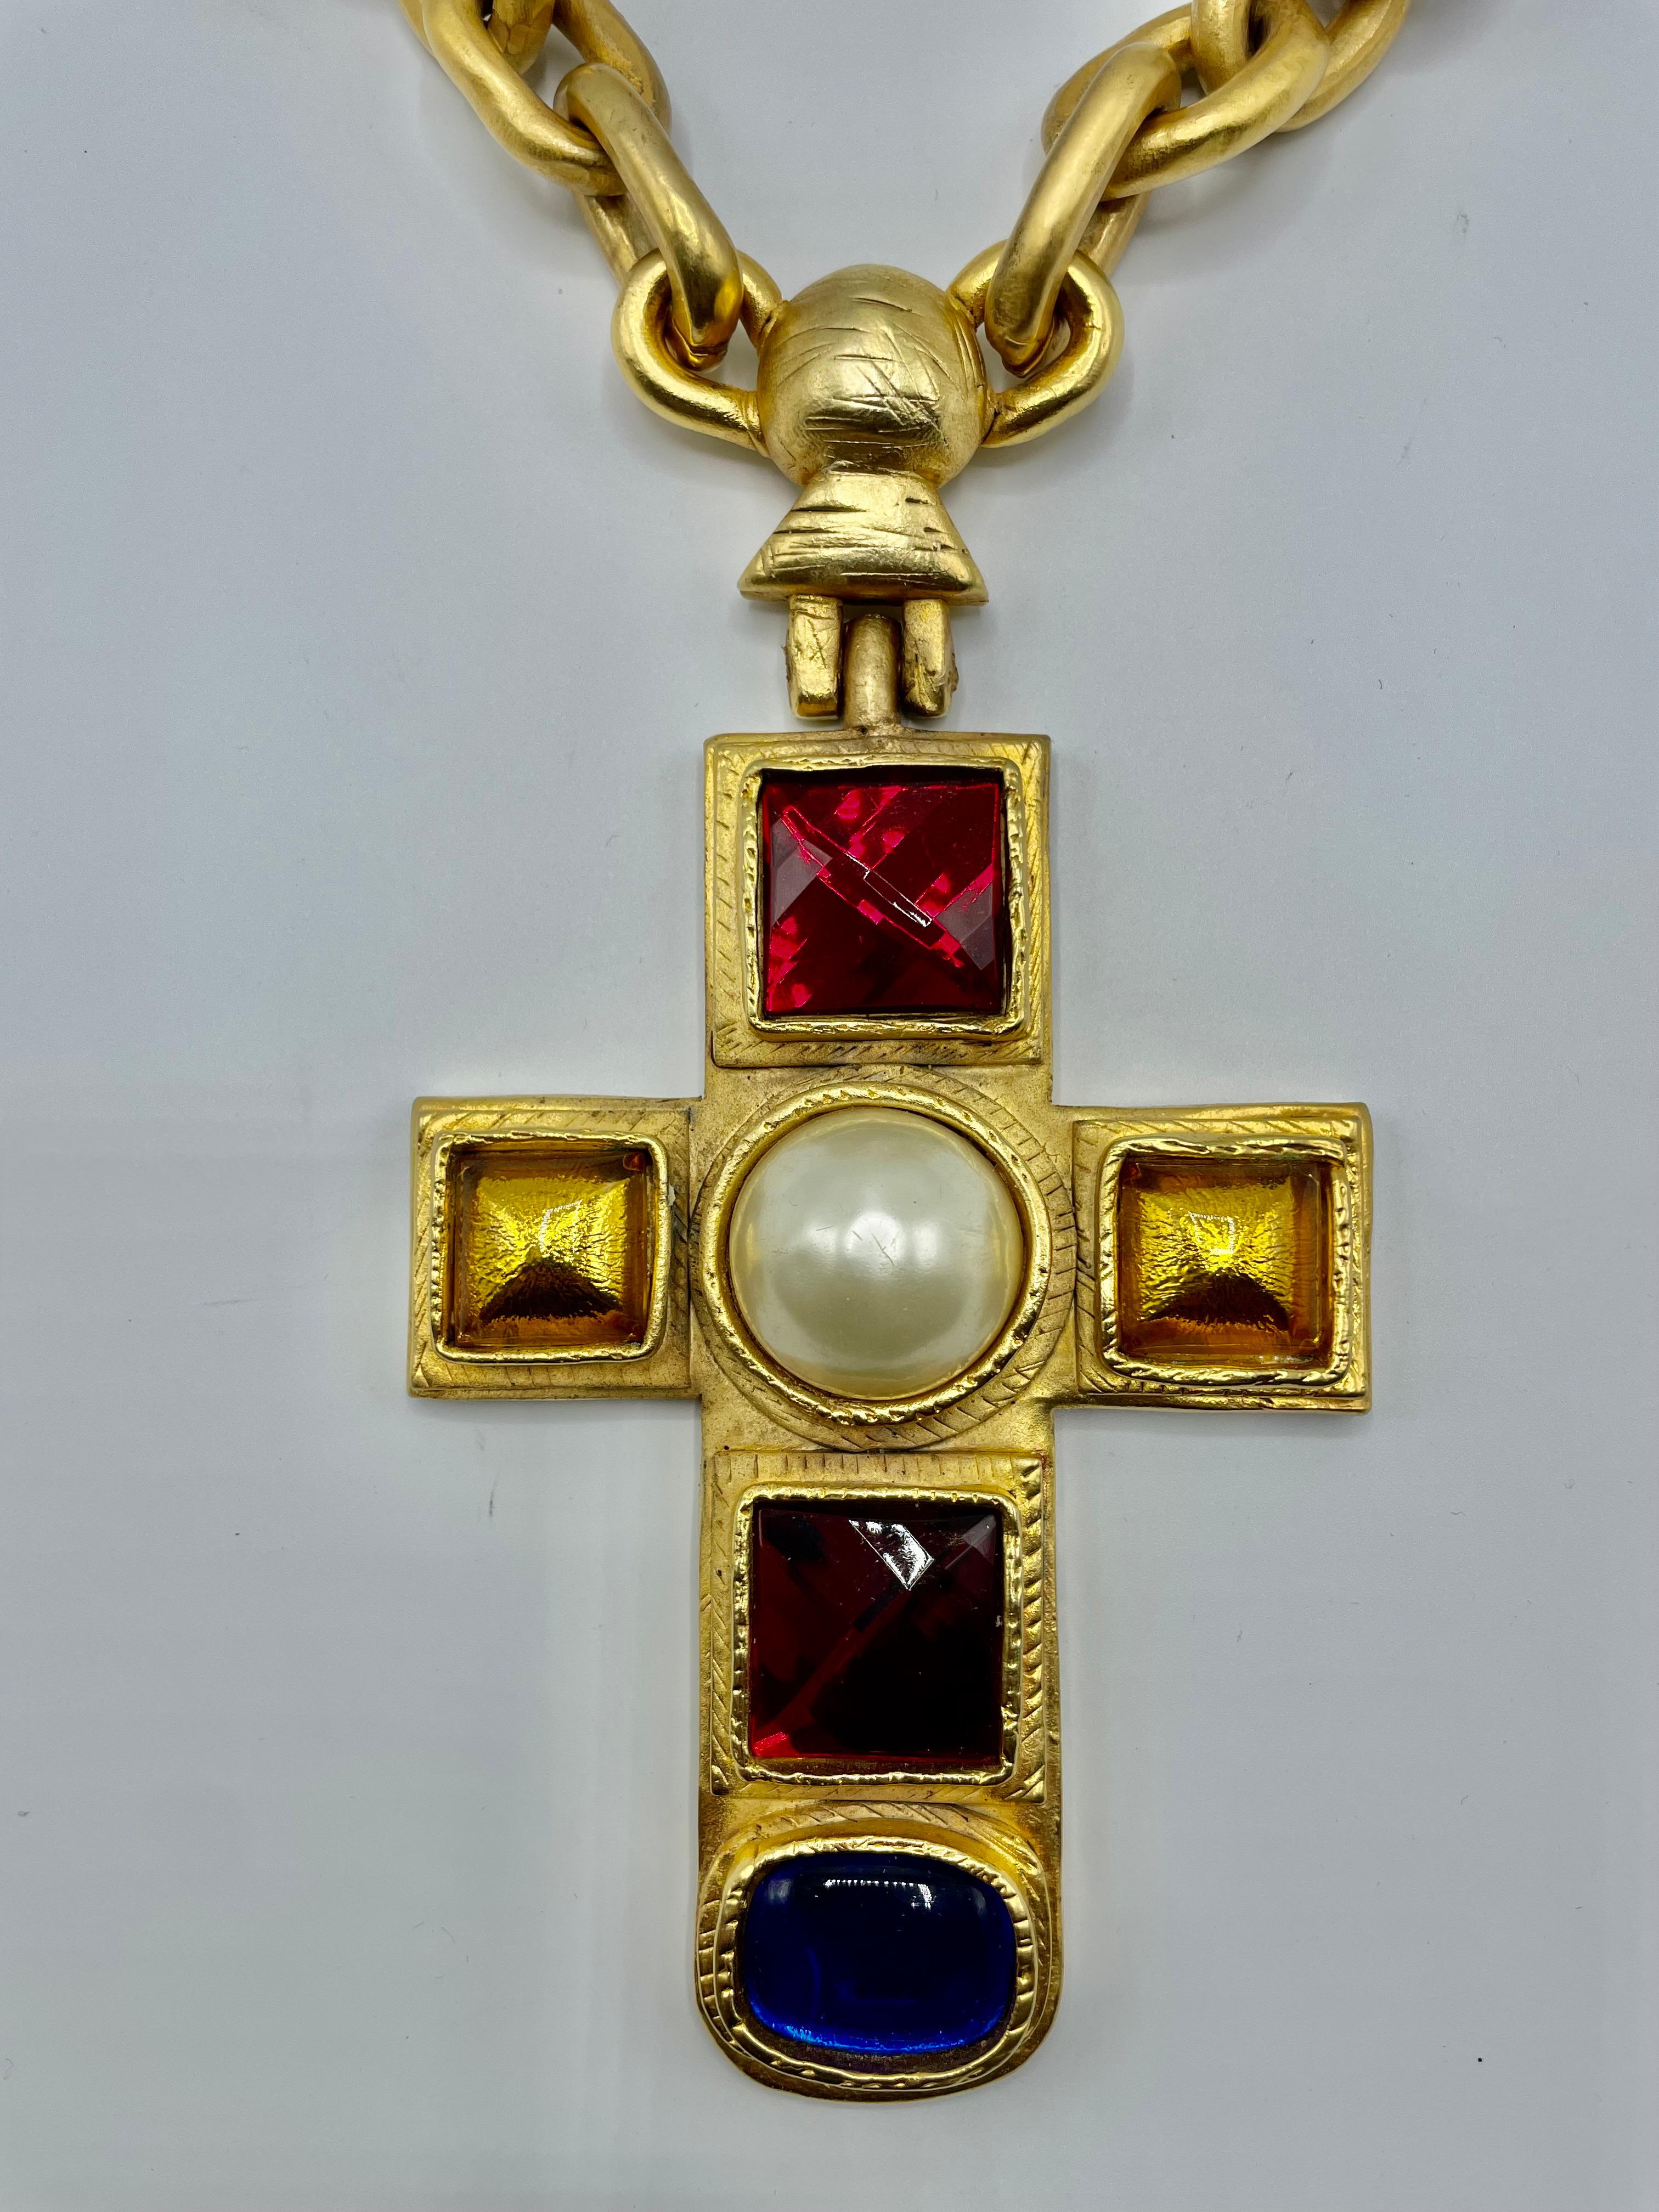 Massives Kreuz und Halskette von Victoire de Castellane, einmalig und spektakulär. Ein Sammlerstück, das man unbedingt haben muss.